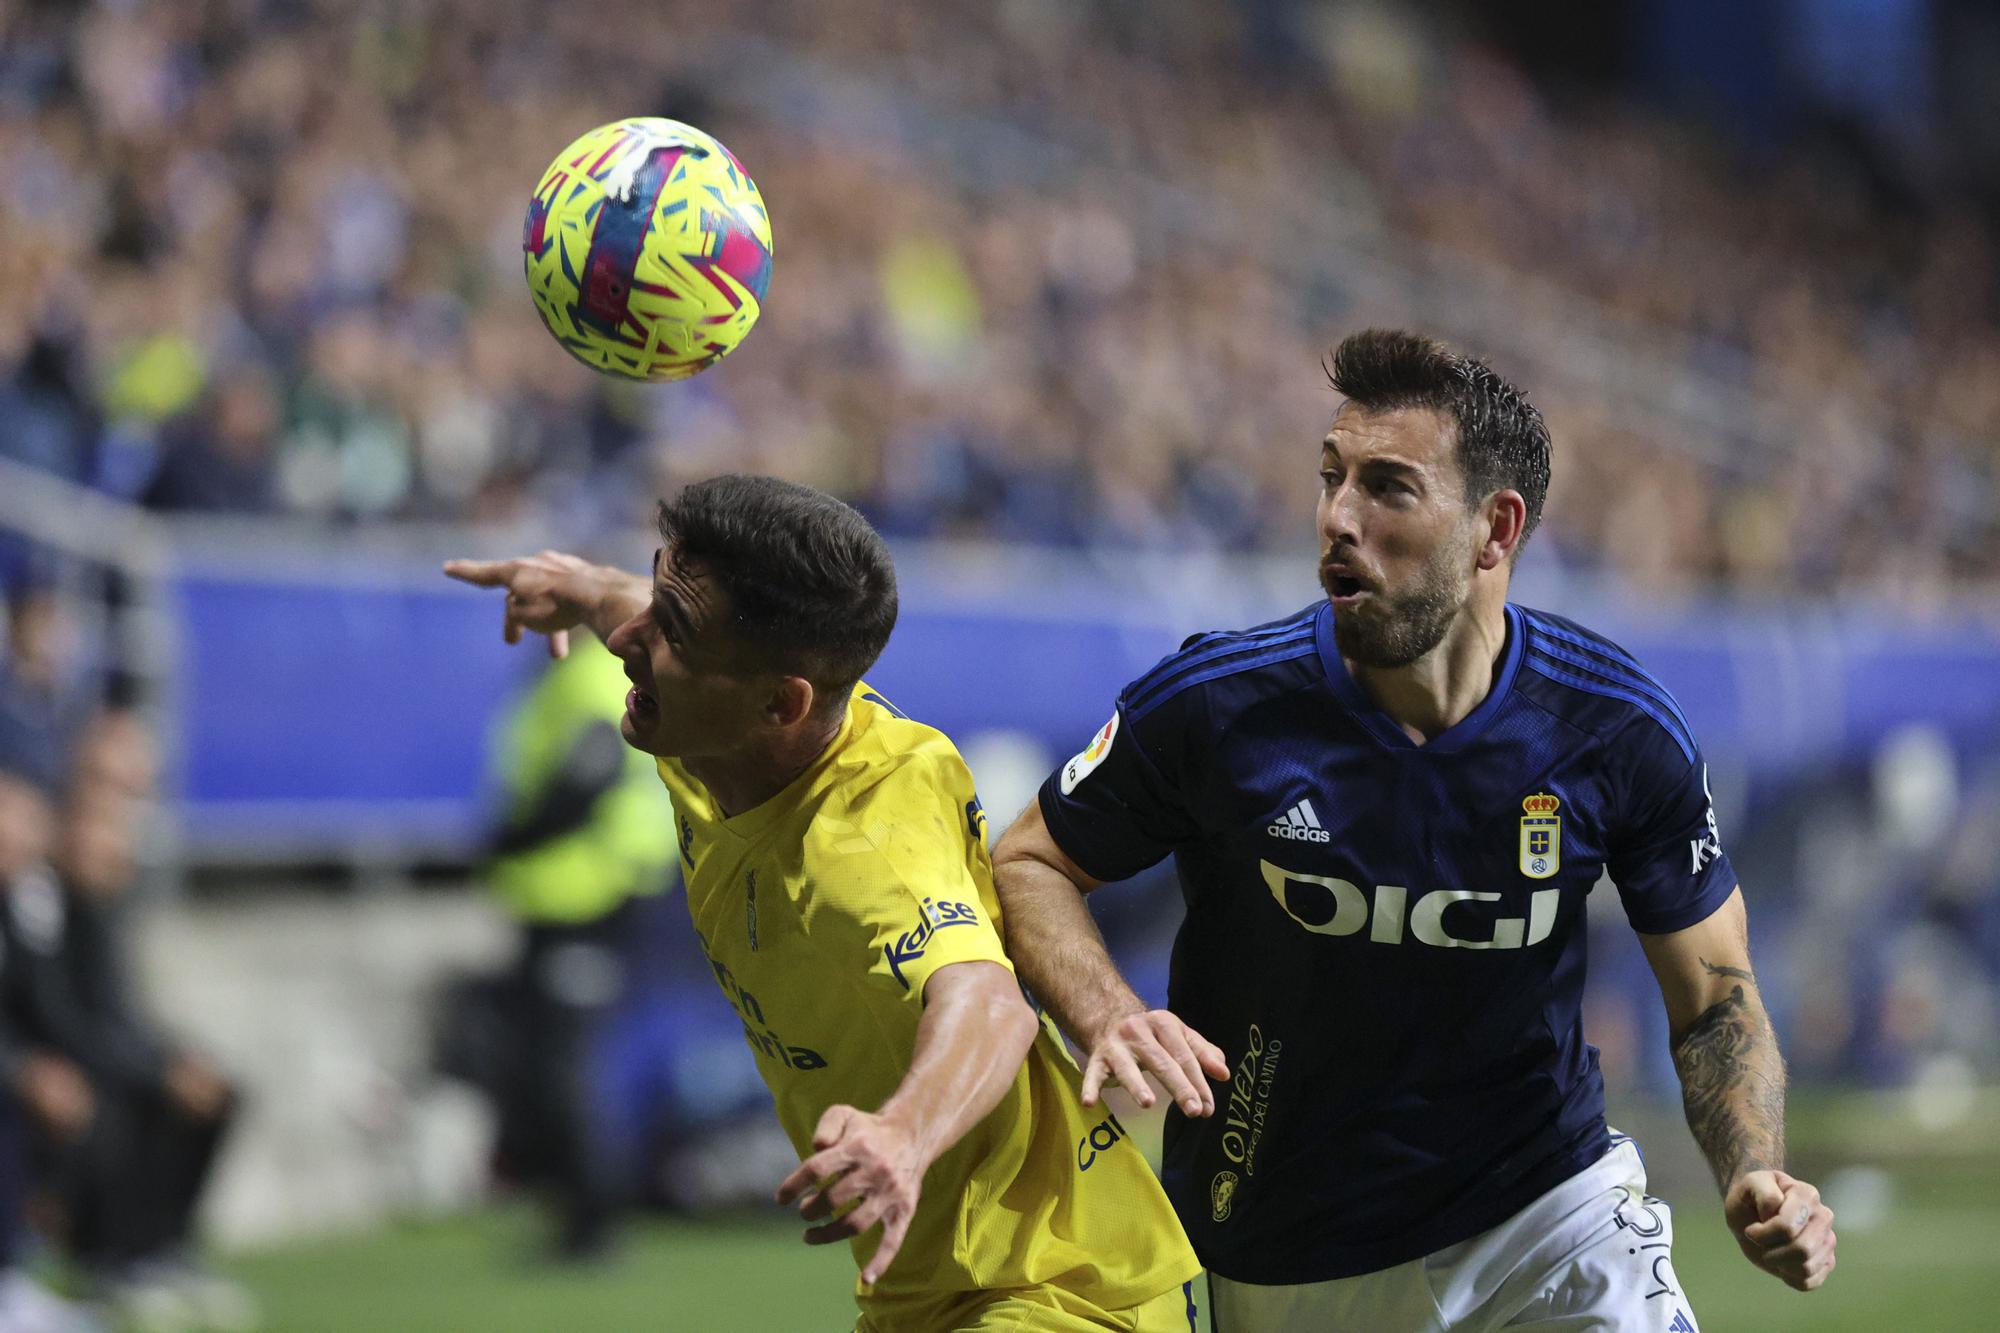 En imágenes: así fue el empate entre Real Oviedo y Las Palmas